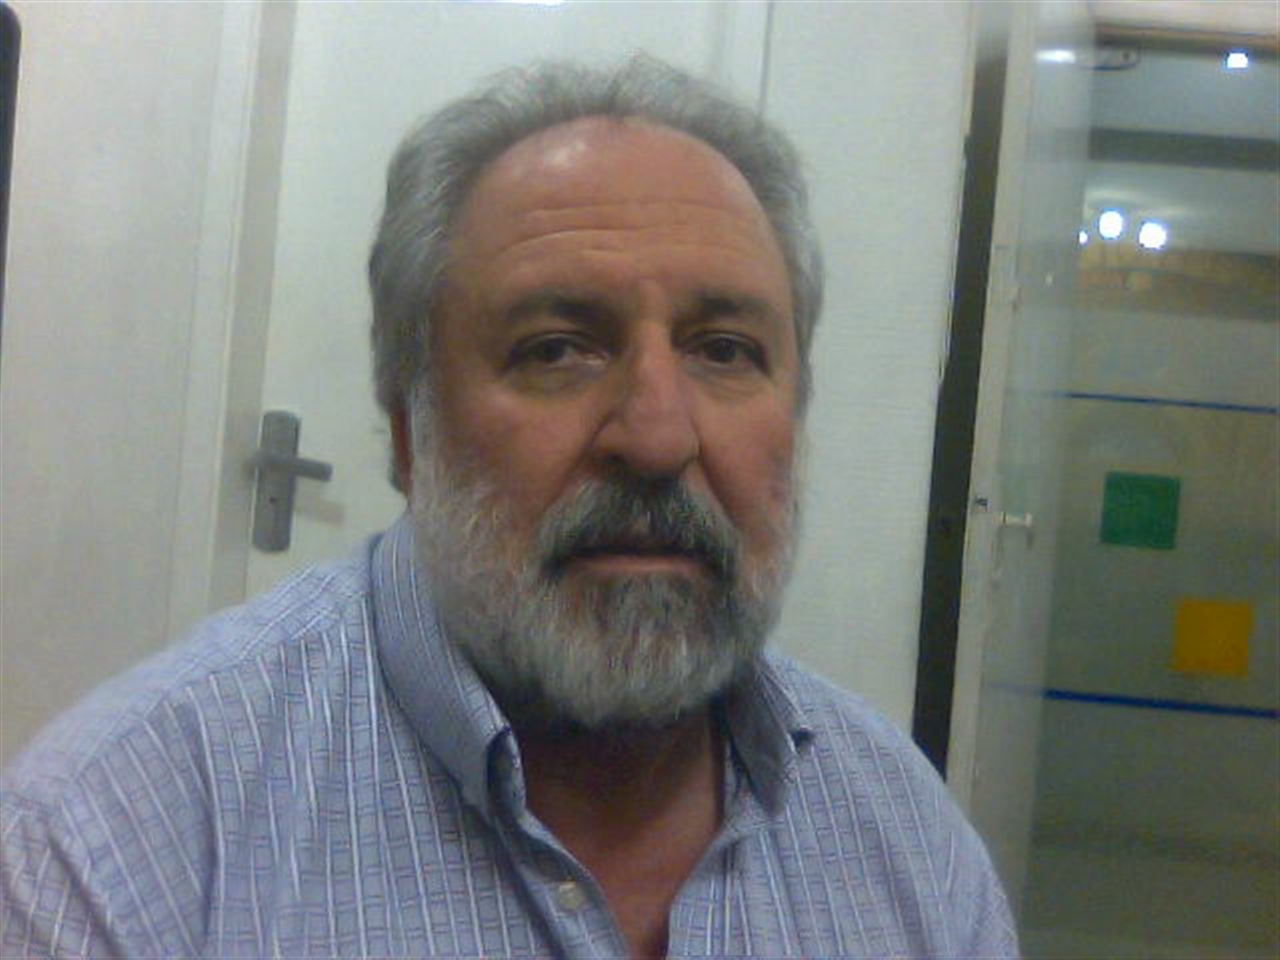 Carlos Roberto Alves dos Santos